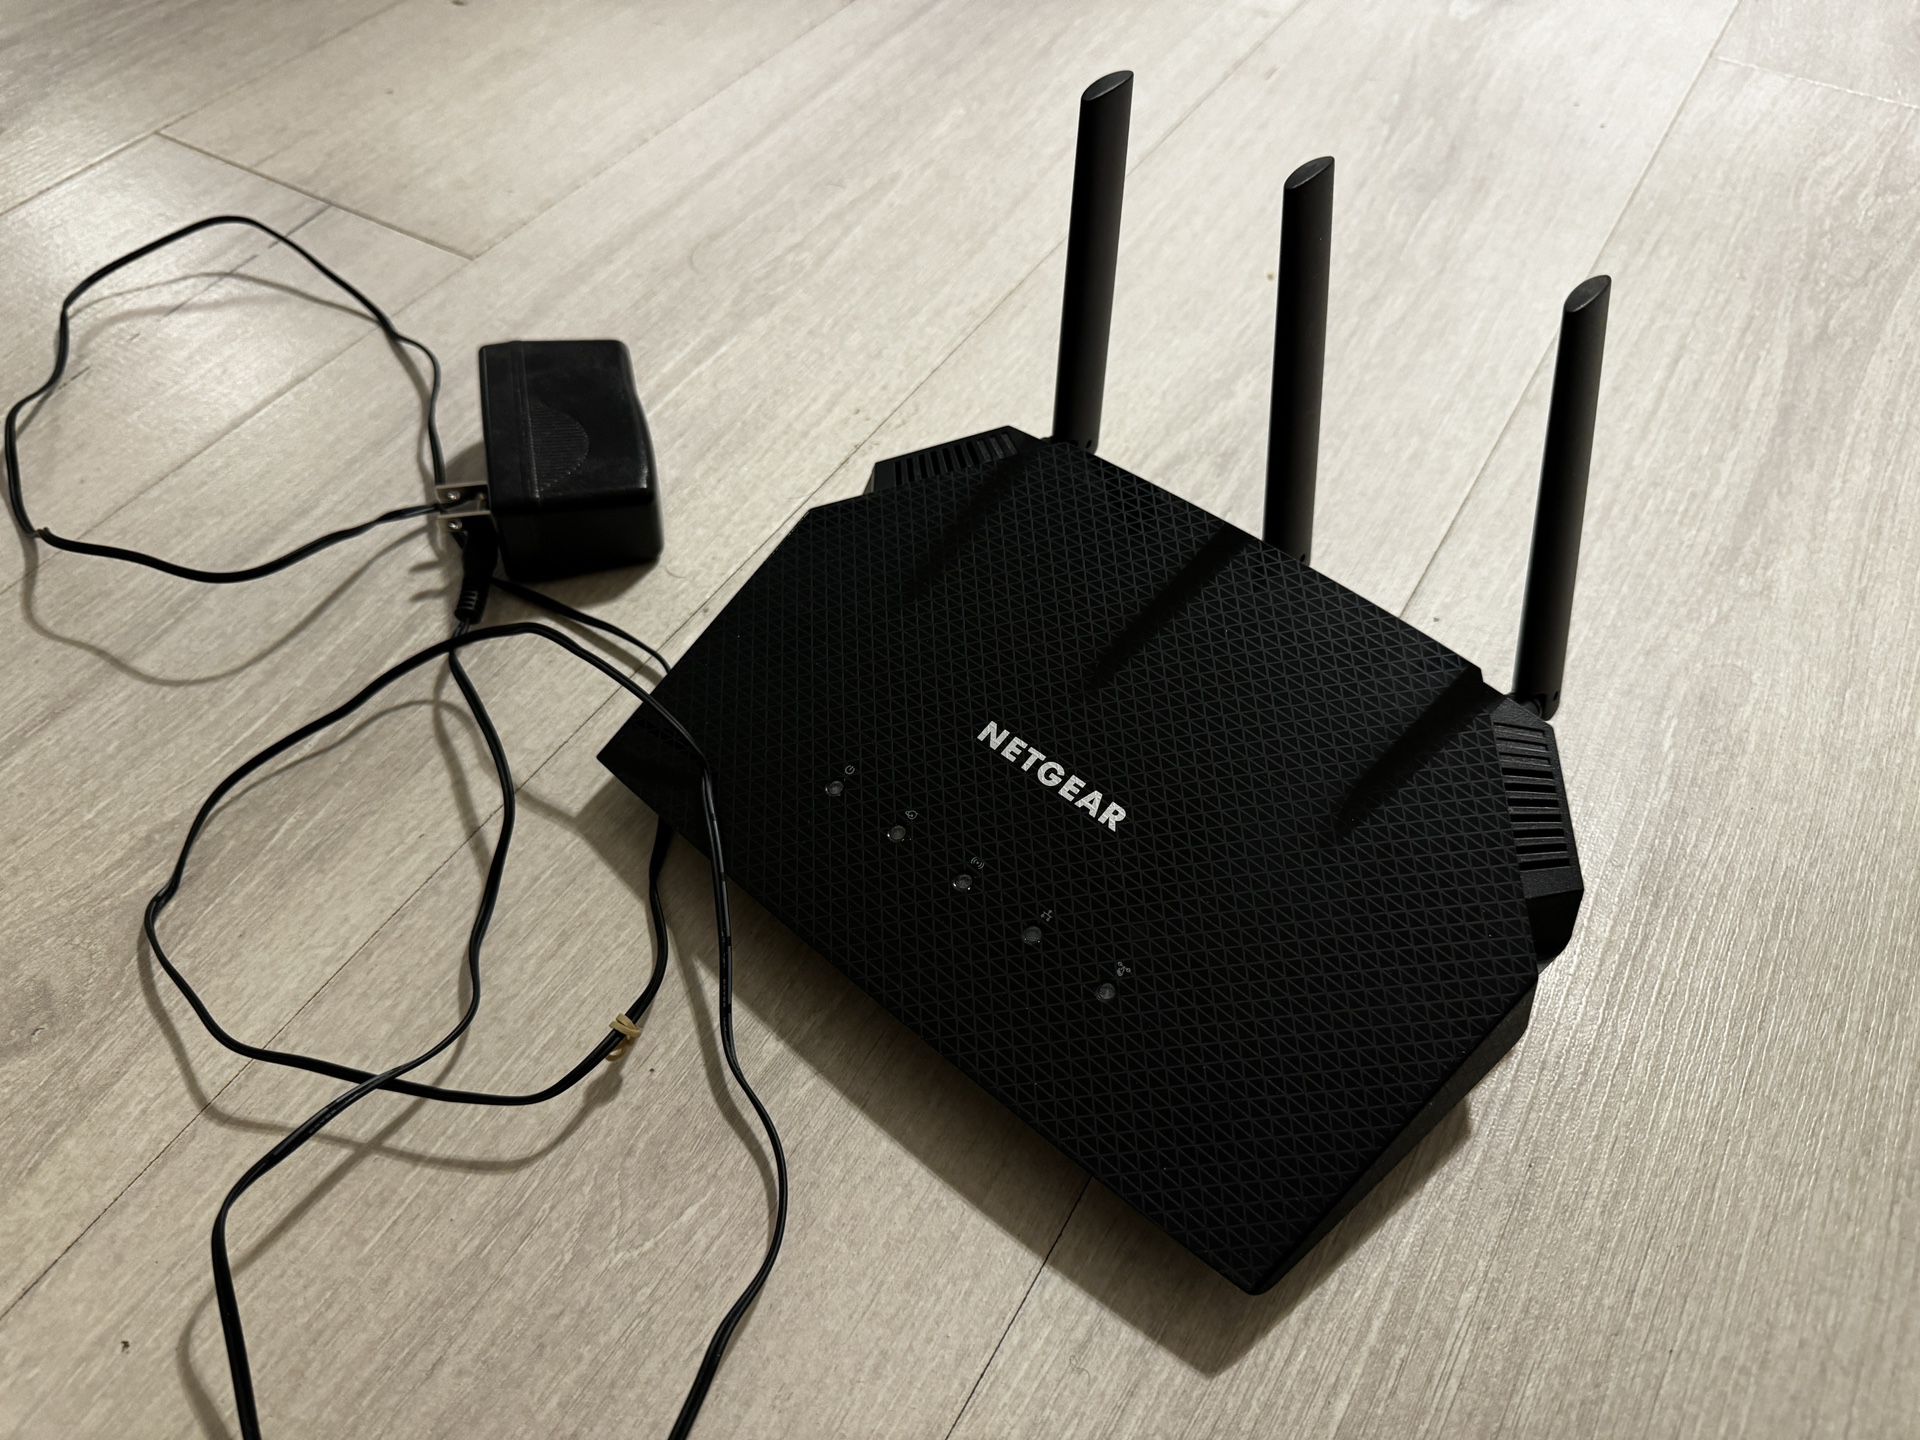 NETGEAR 4-Stream WiFi 6 Router (R6700AX) – AX1800